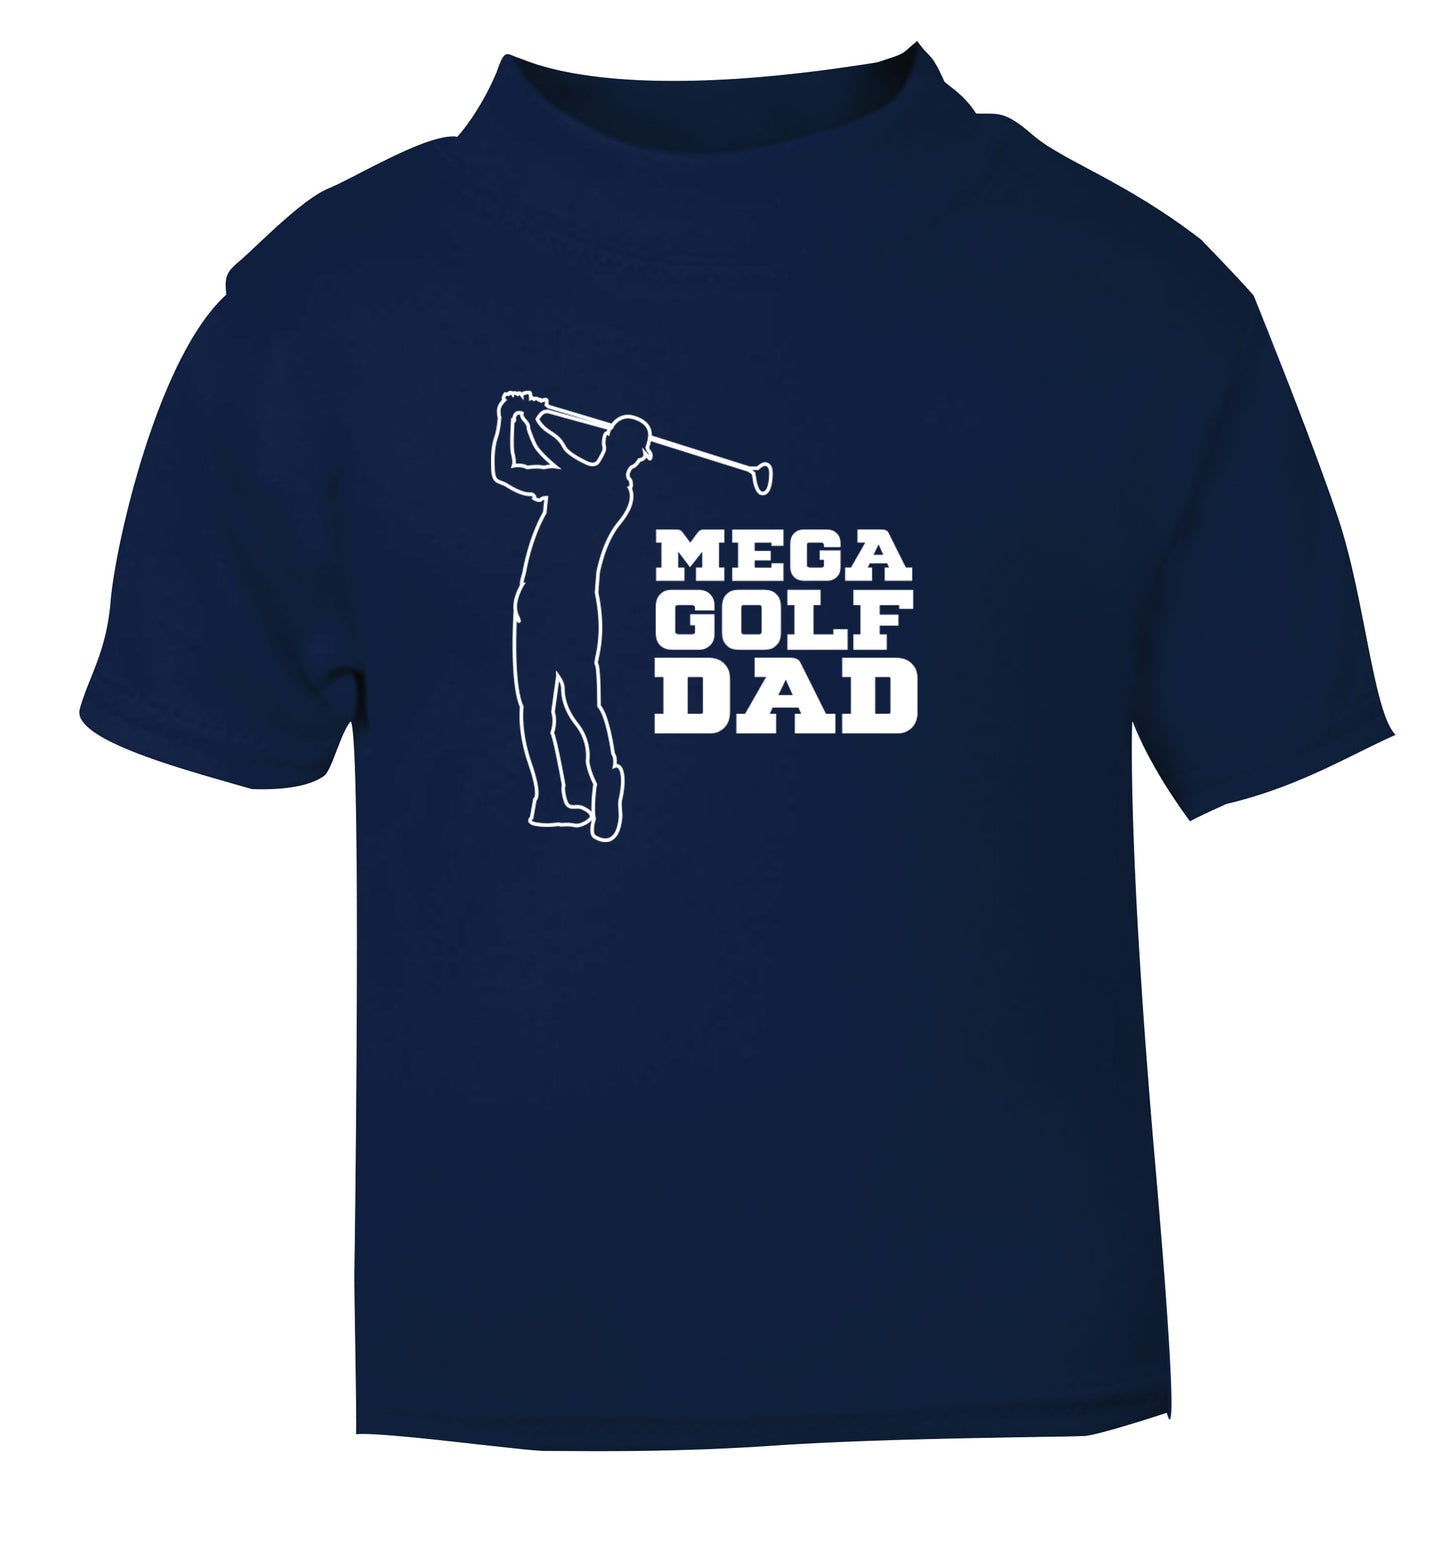 Mega golfing dad navy Baby Toddler Tshirt 2 Years